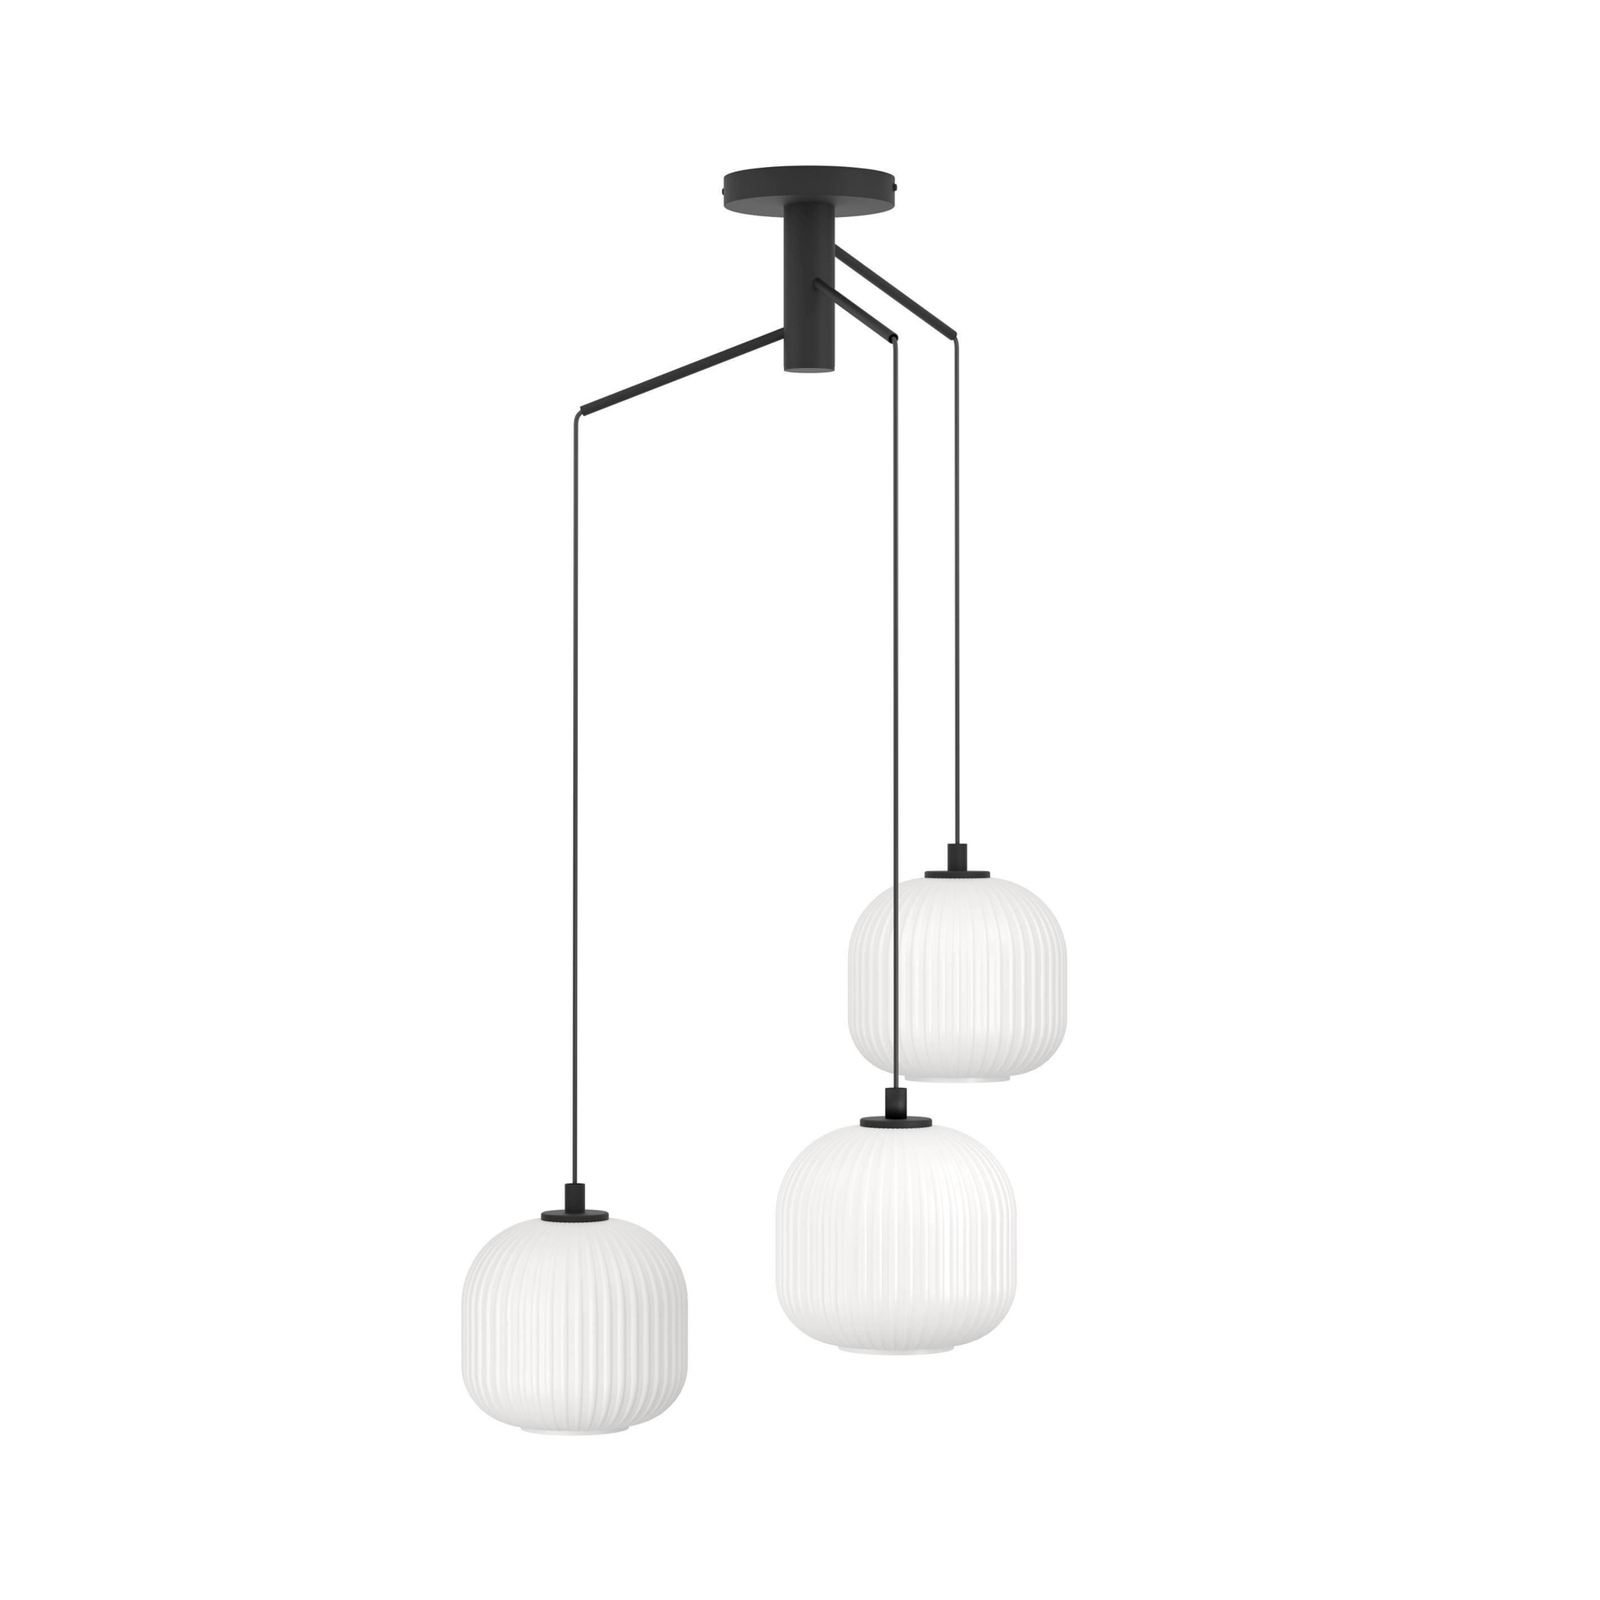 Mantunalle viseća svjetiljka, Ø 62 cm, crno/bijela, 3 žarulje.